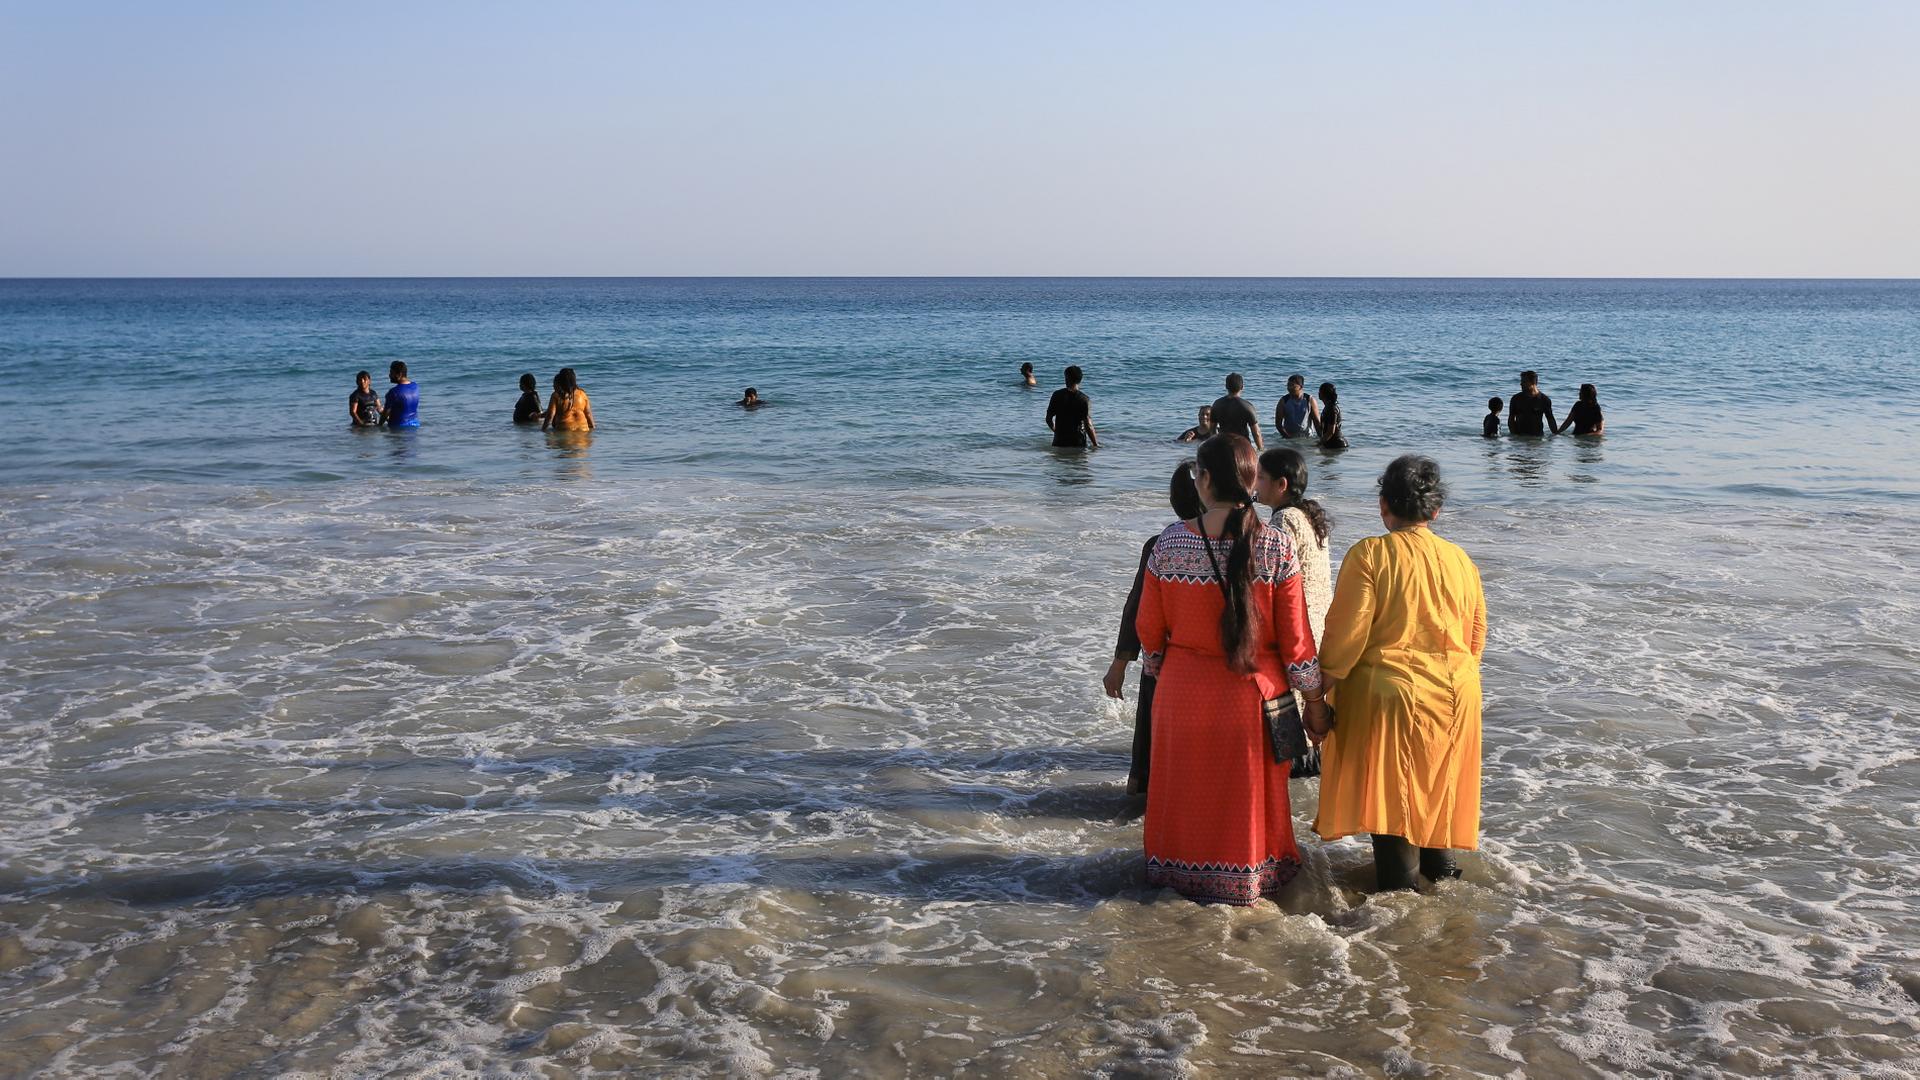 Turyści z Indii plażują zupełnie inaczej niż ludzie Zachodu. Kąpią sie całymi rodzinami, w ubraniach, ciesząc się przy tym jak dzieci.